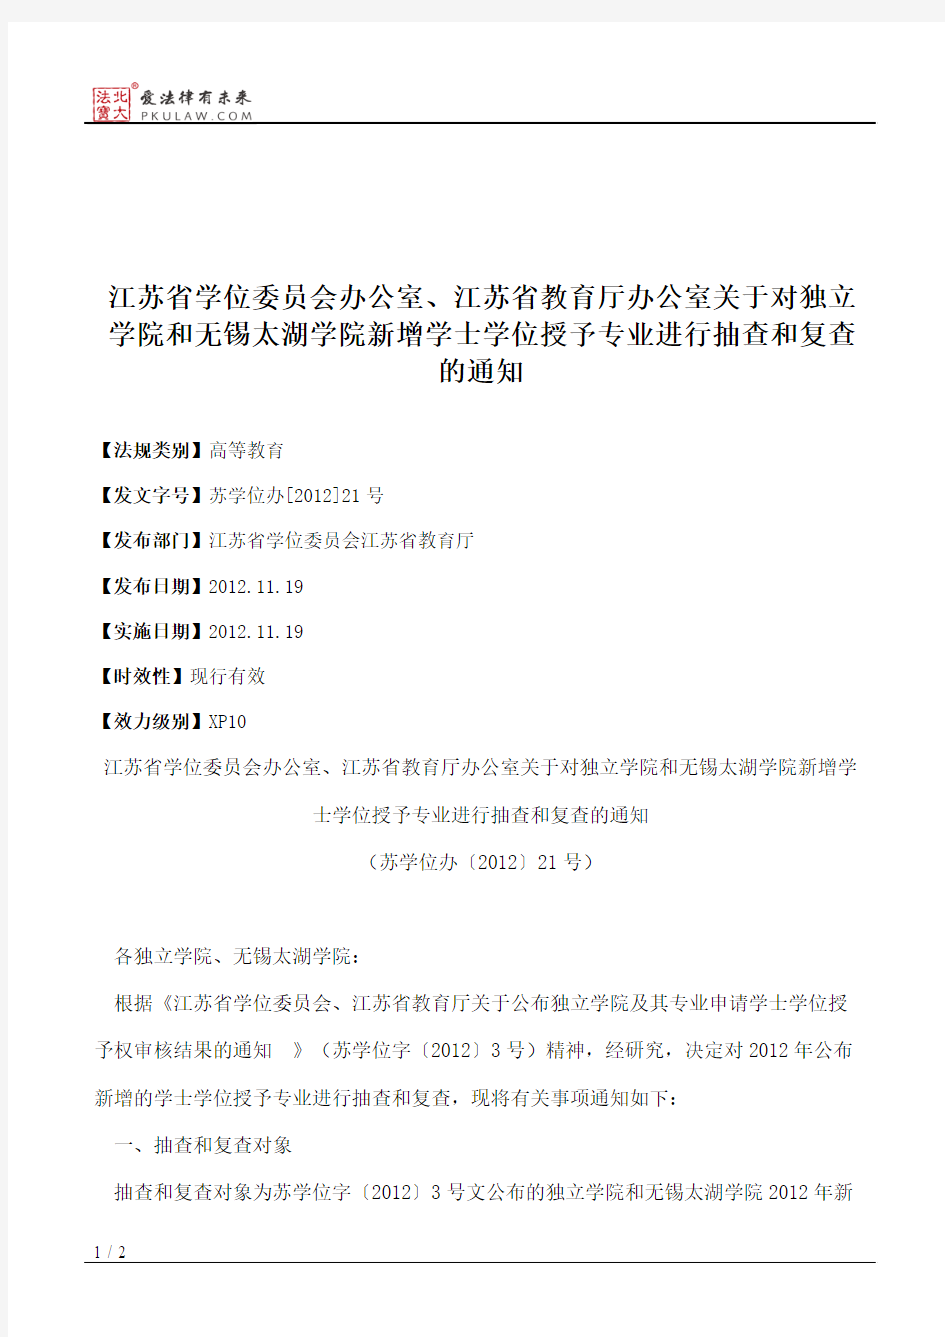 江苏省学位委员会办公室、江苏省教育厅办公室关于对独立学院和无